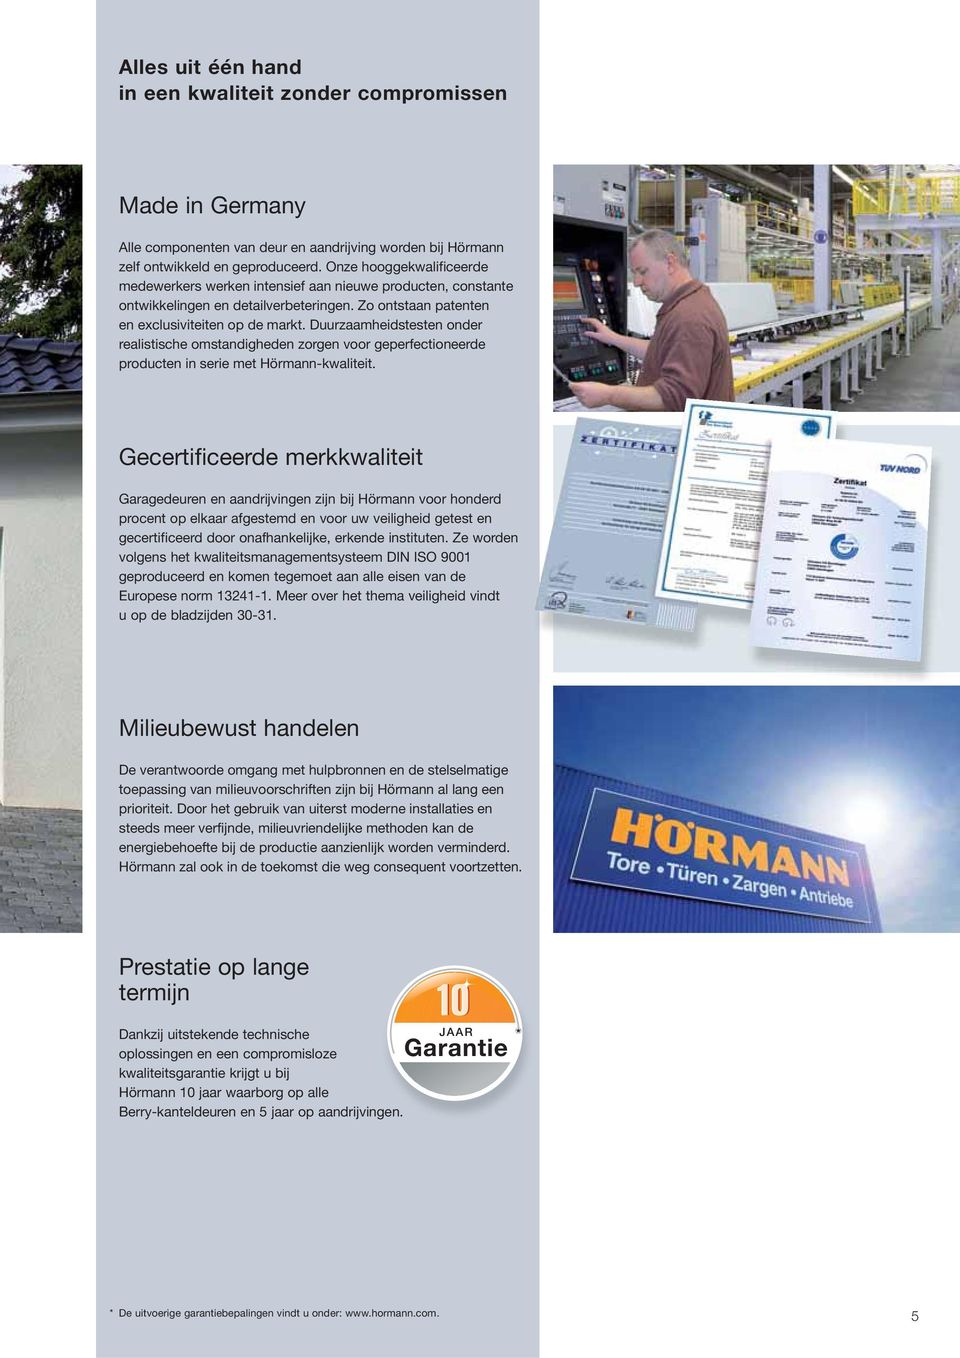 Duurzaamheidstesten onder realistische omstandigheden zorgen voor geperfectioneerde producten in serie met Hörmann-kwaliteit.